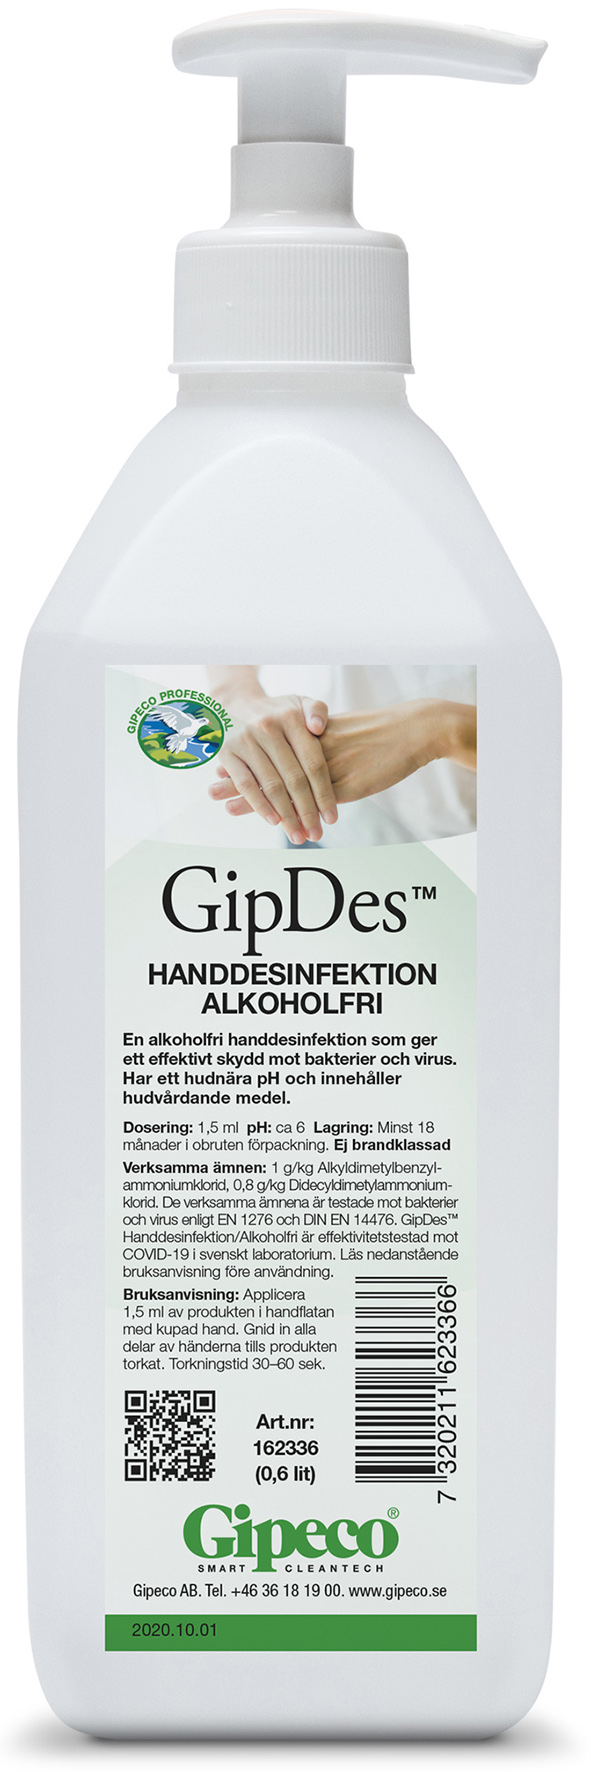 [8556605] GipDes Handdesinfektion 0,6 l